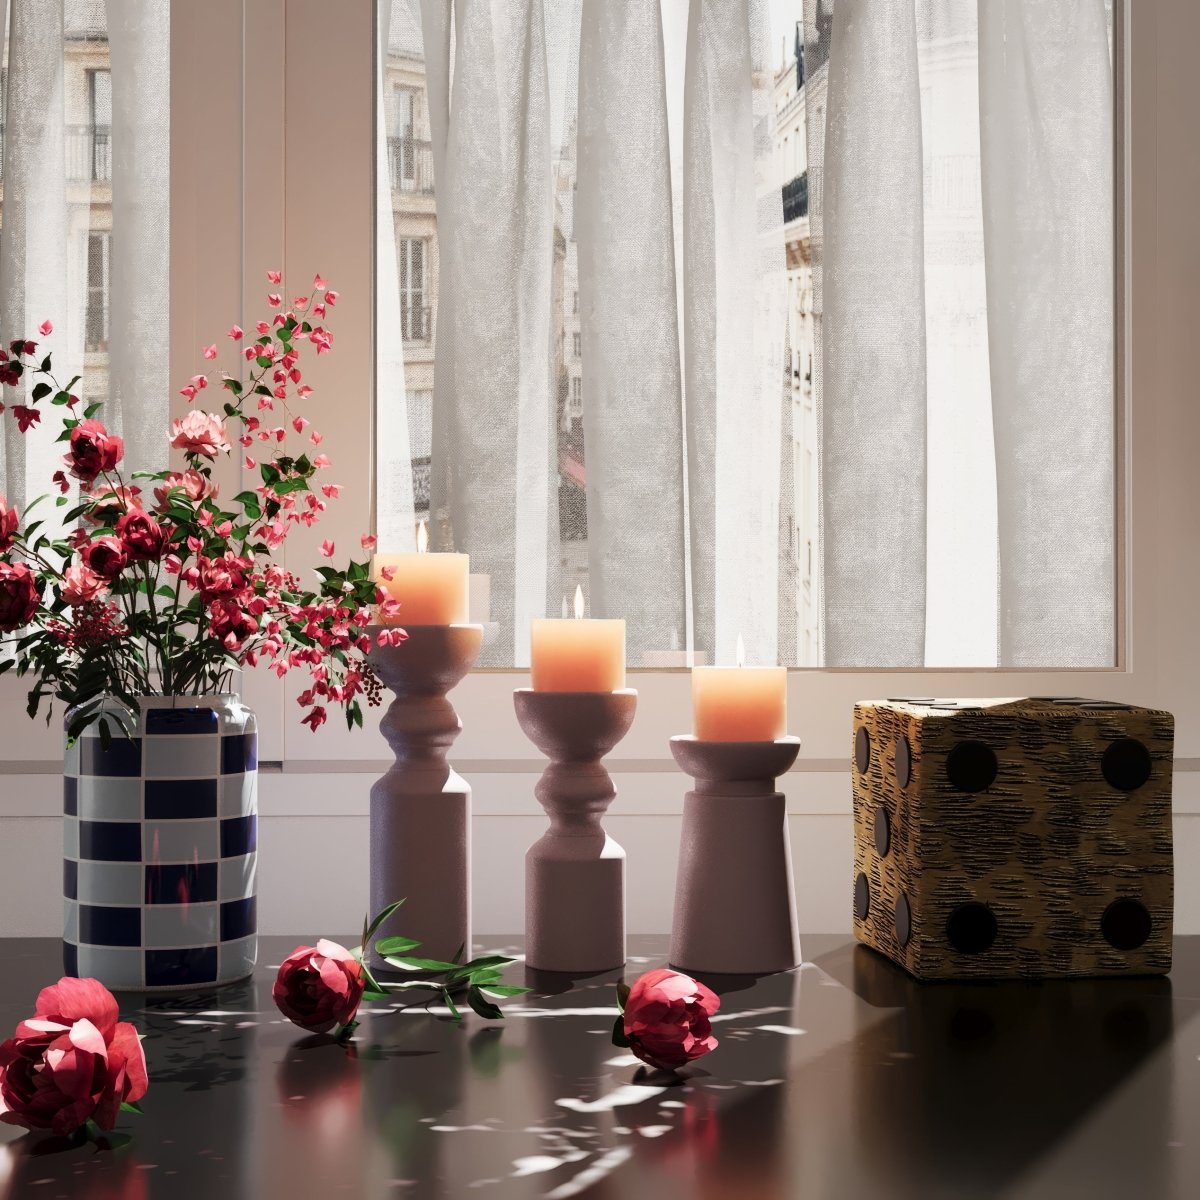 Les objets déco design Potiron Paris vous permettent toutes les libertés de style pour créer vos compositions : vase à damier en céramique brillante, bougeoirs stylisés modernes, dé à jouer imitaiton bois